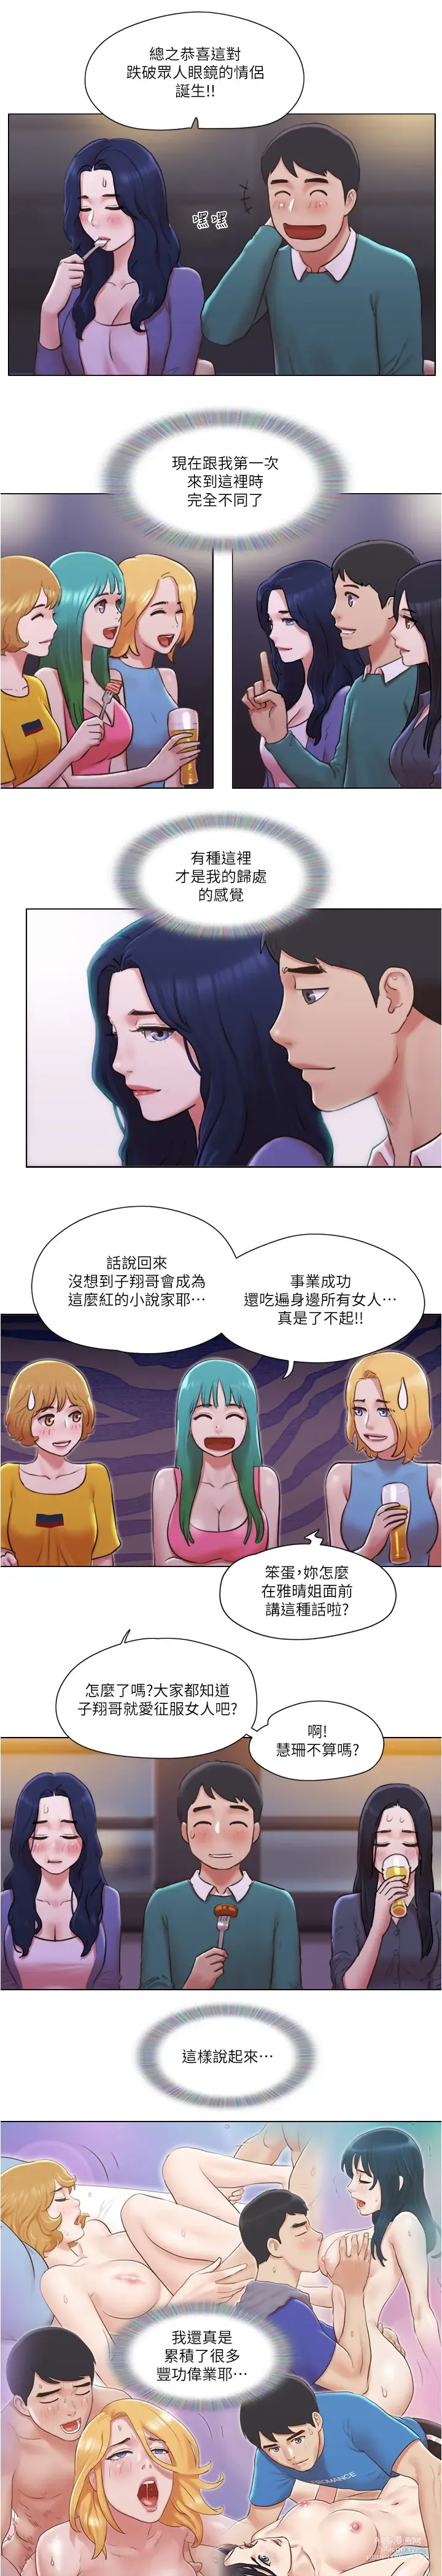 Page 1020 of manga 單身女子公寓 1-41 END